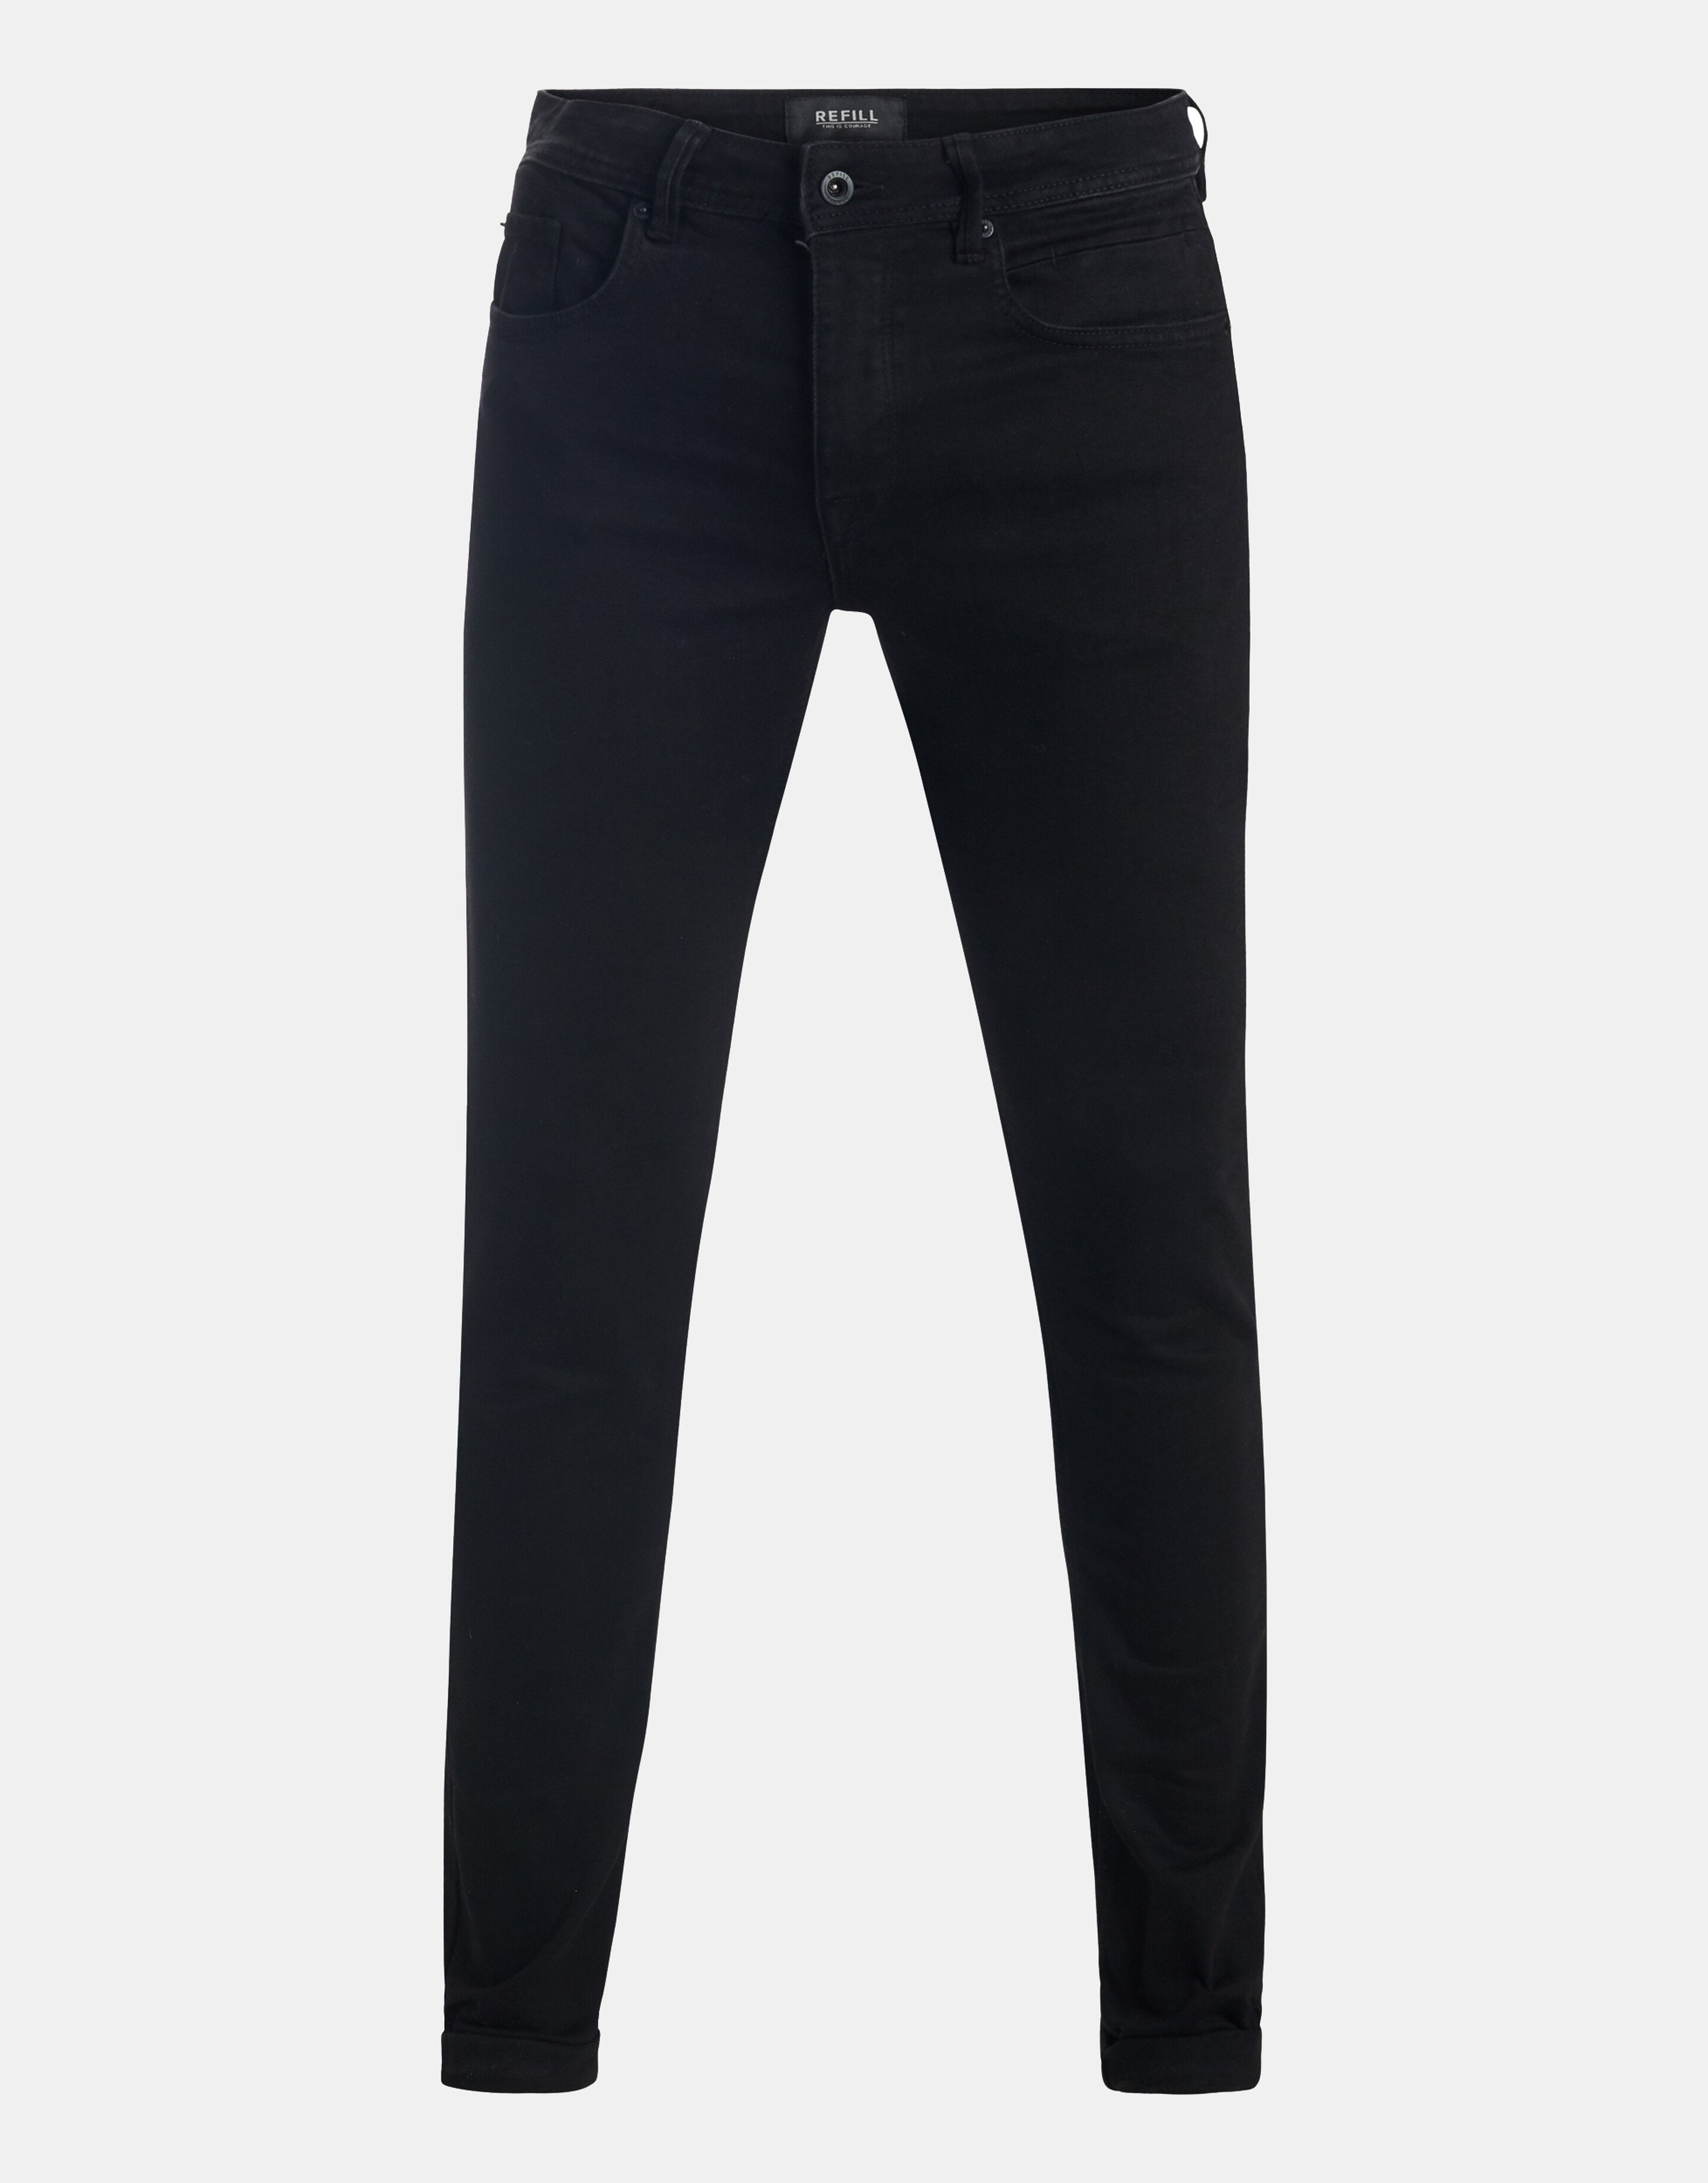 Lucas Slim Black Jeans L34 REFILL AUTHENTIC